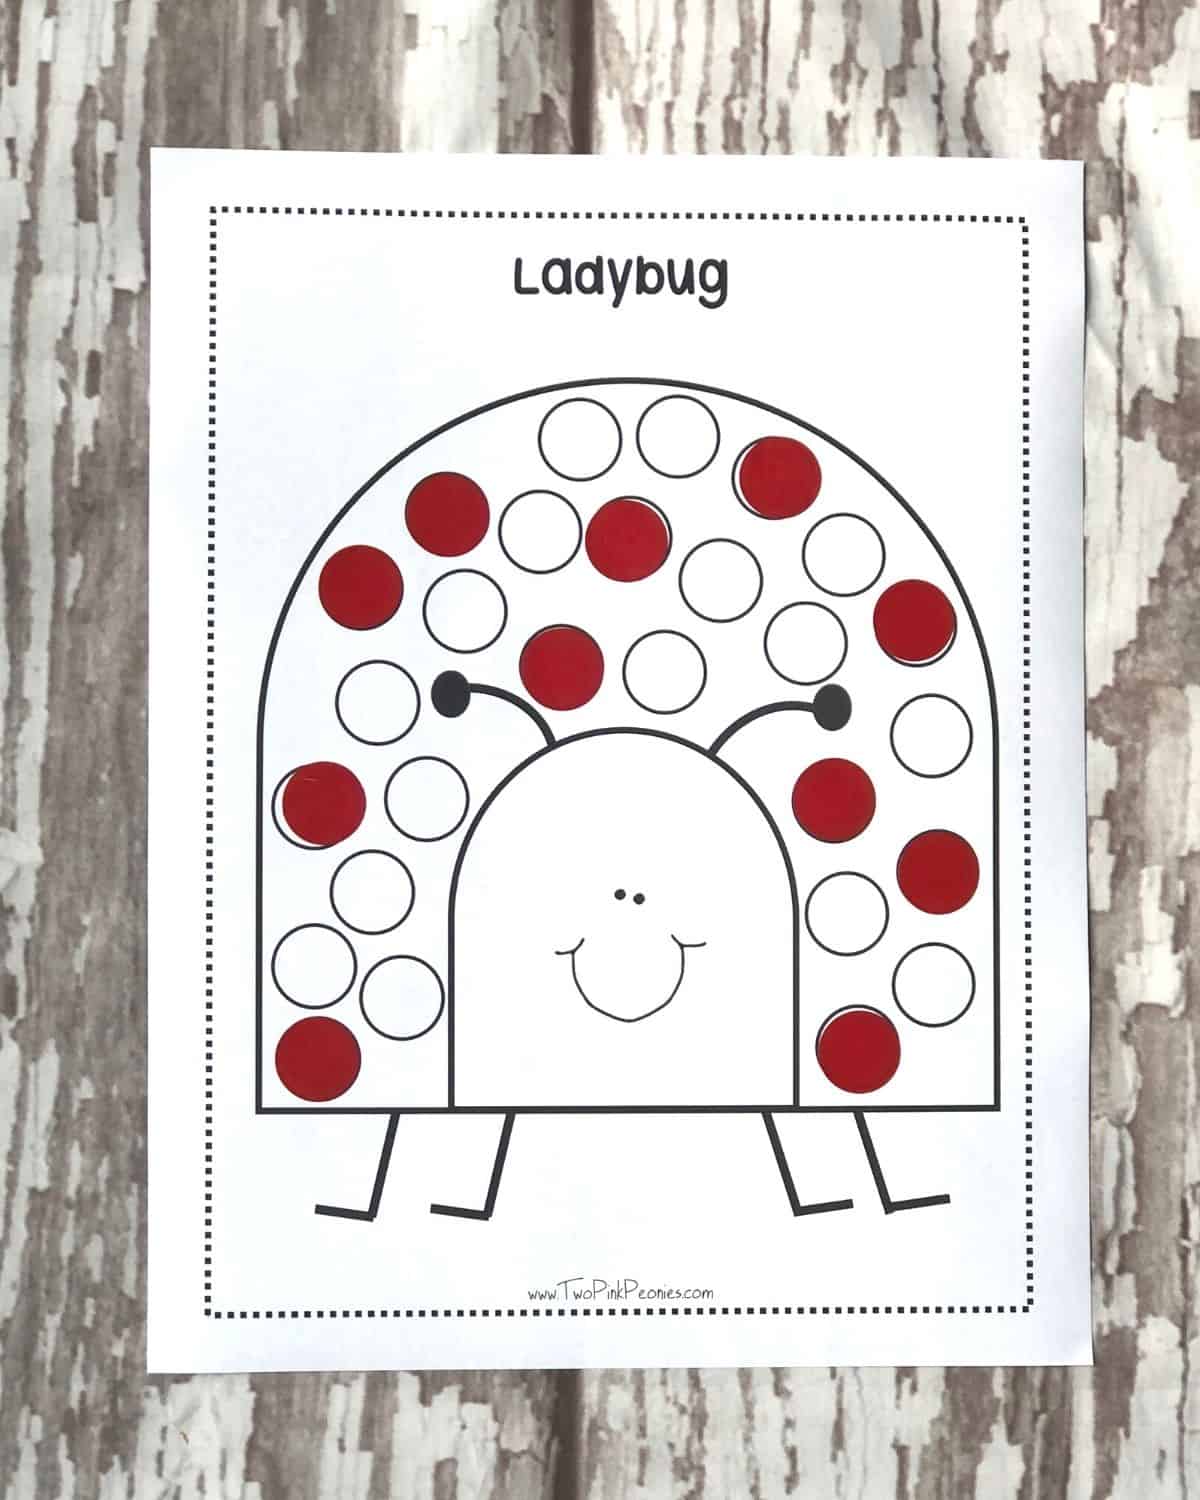 ladybug printable with dot stickers